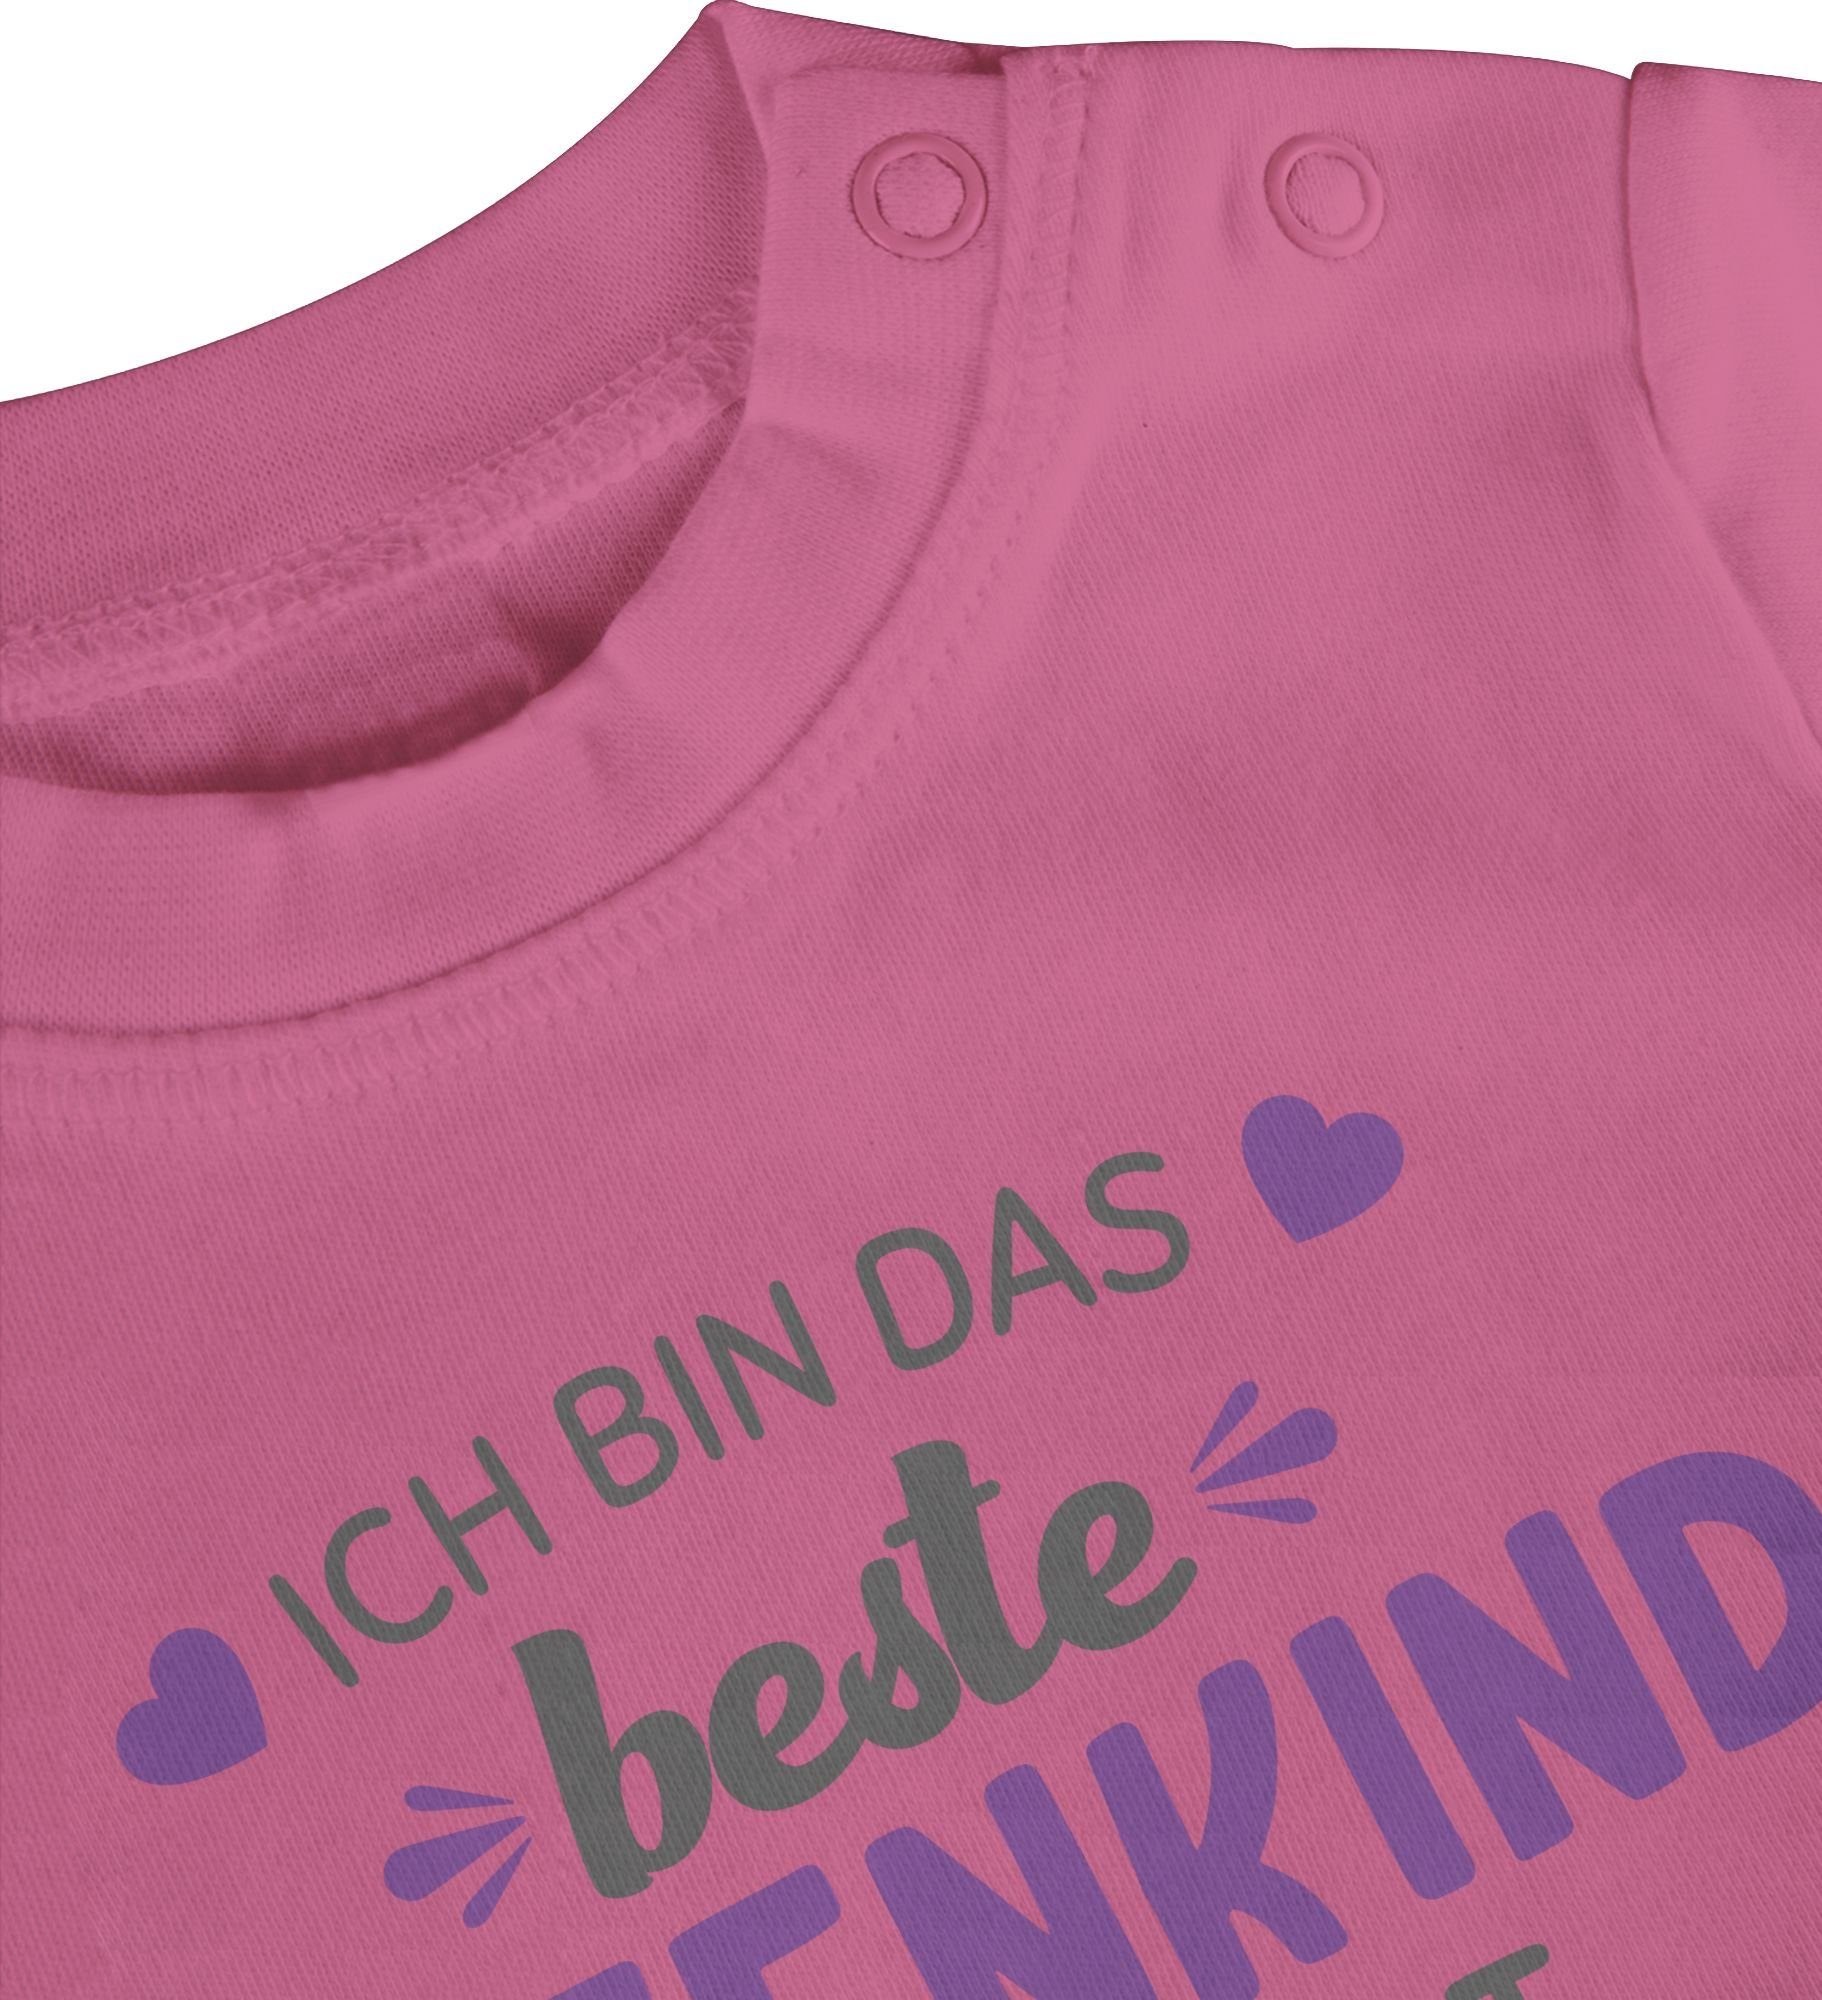 Shirtracer T-Shirt Ich 2 Patentante Welt bin Pink grau/lila Patenkind der das Baby beste